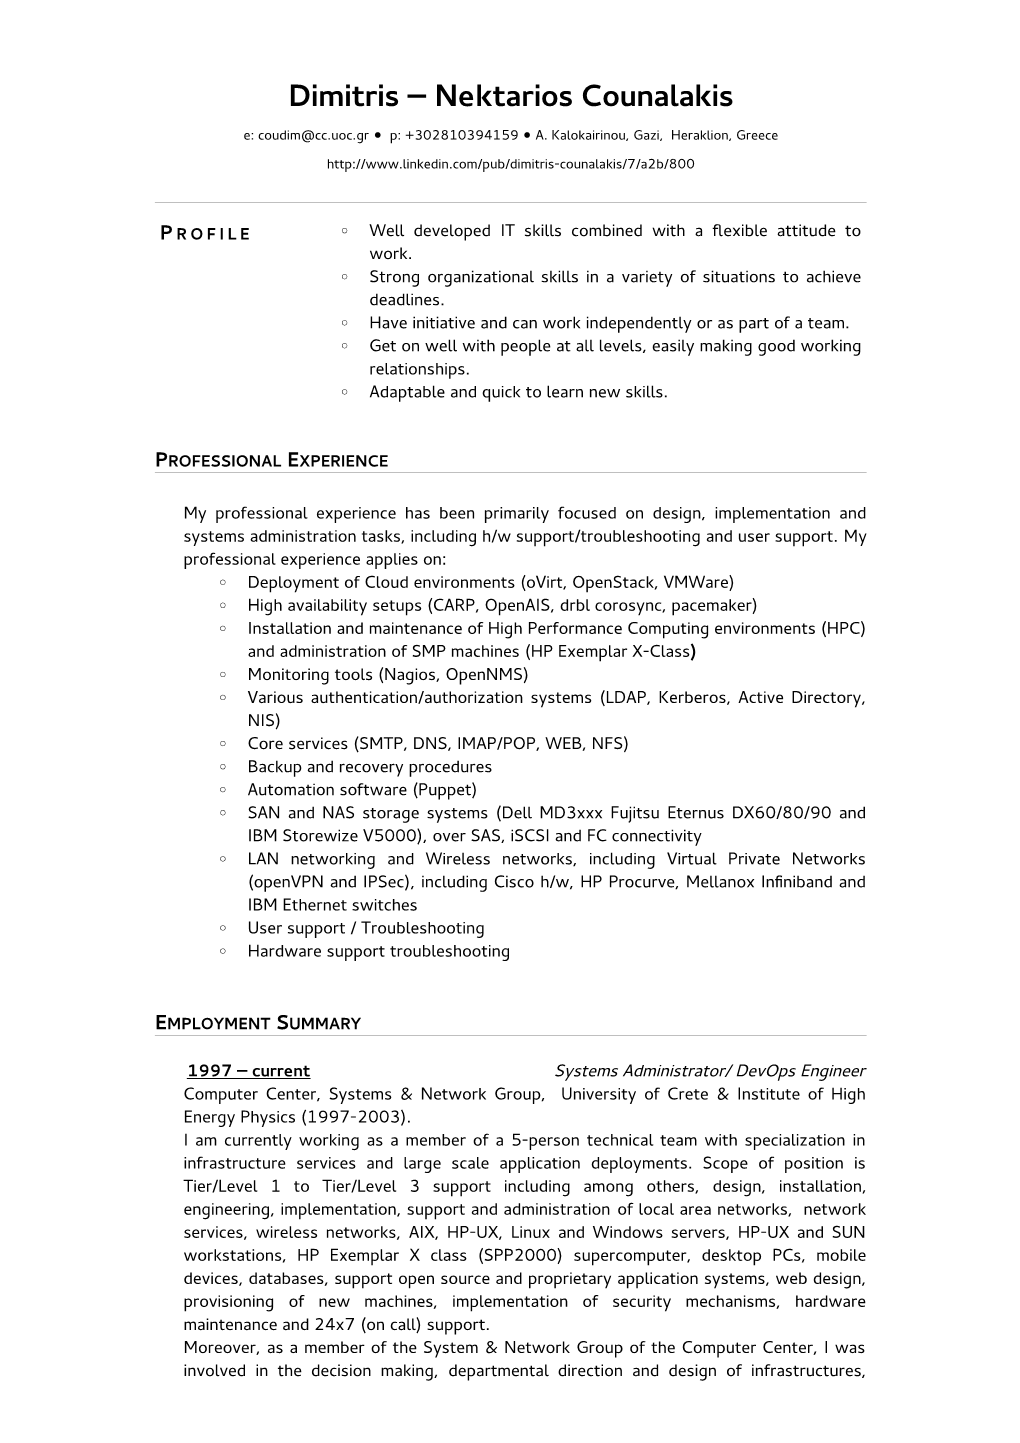 Short CV [PDF]